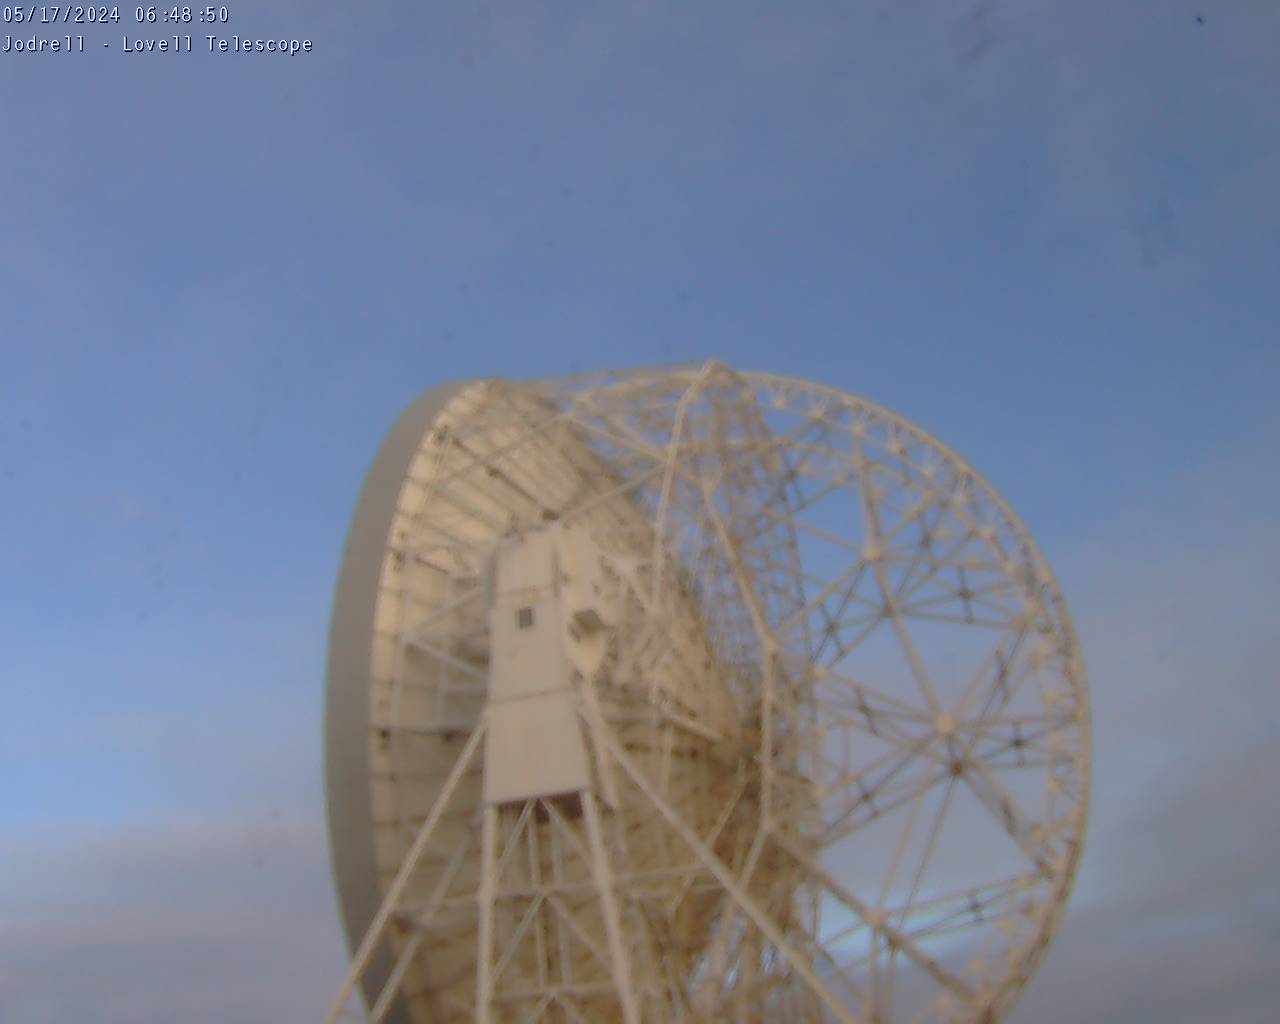 Observatorio Jodrell Bank Sáb. 06:49